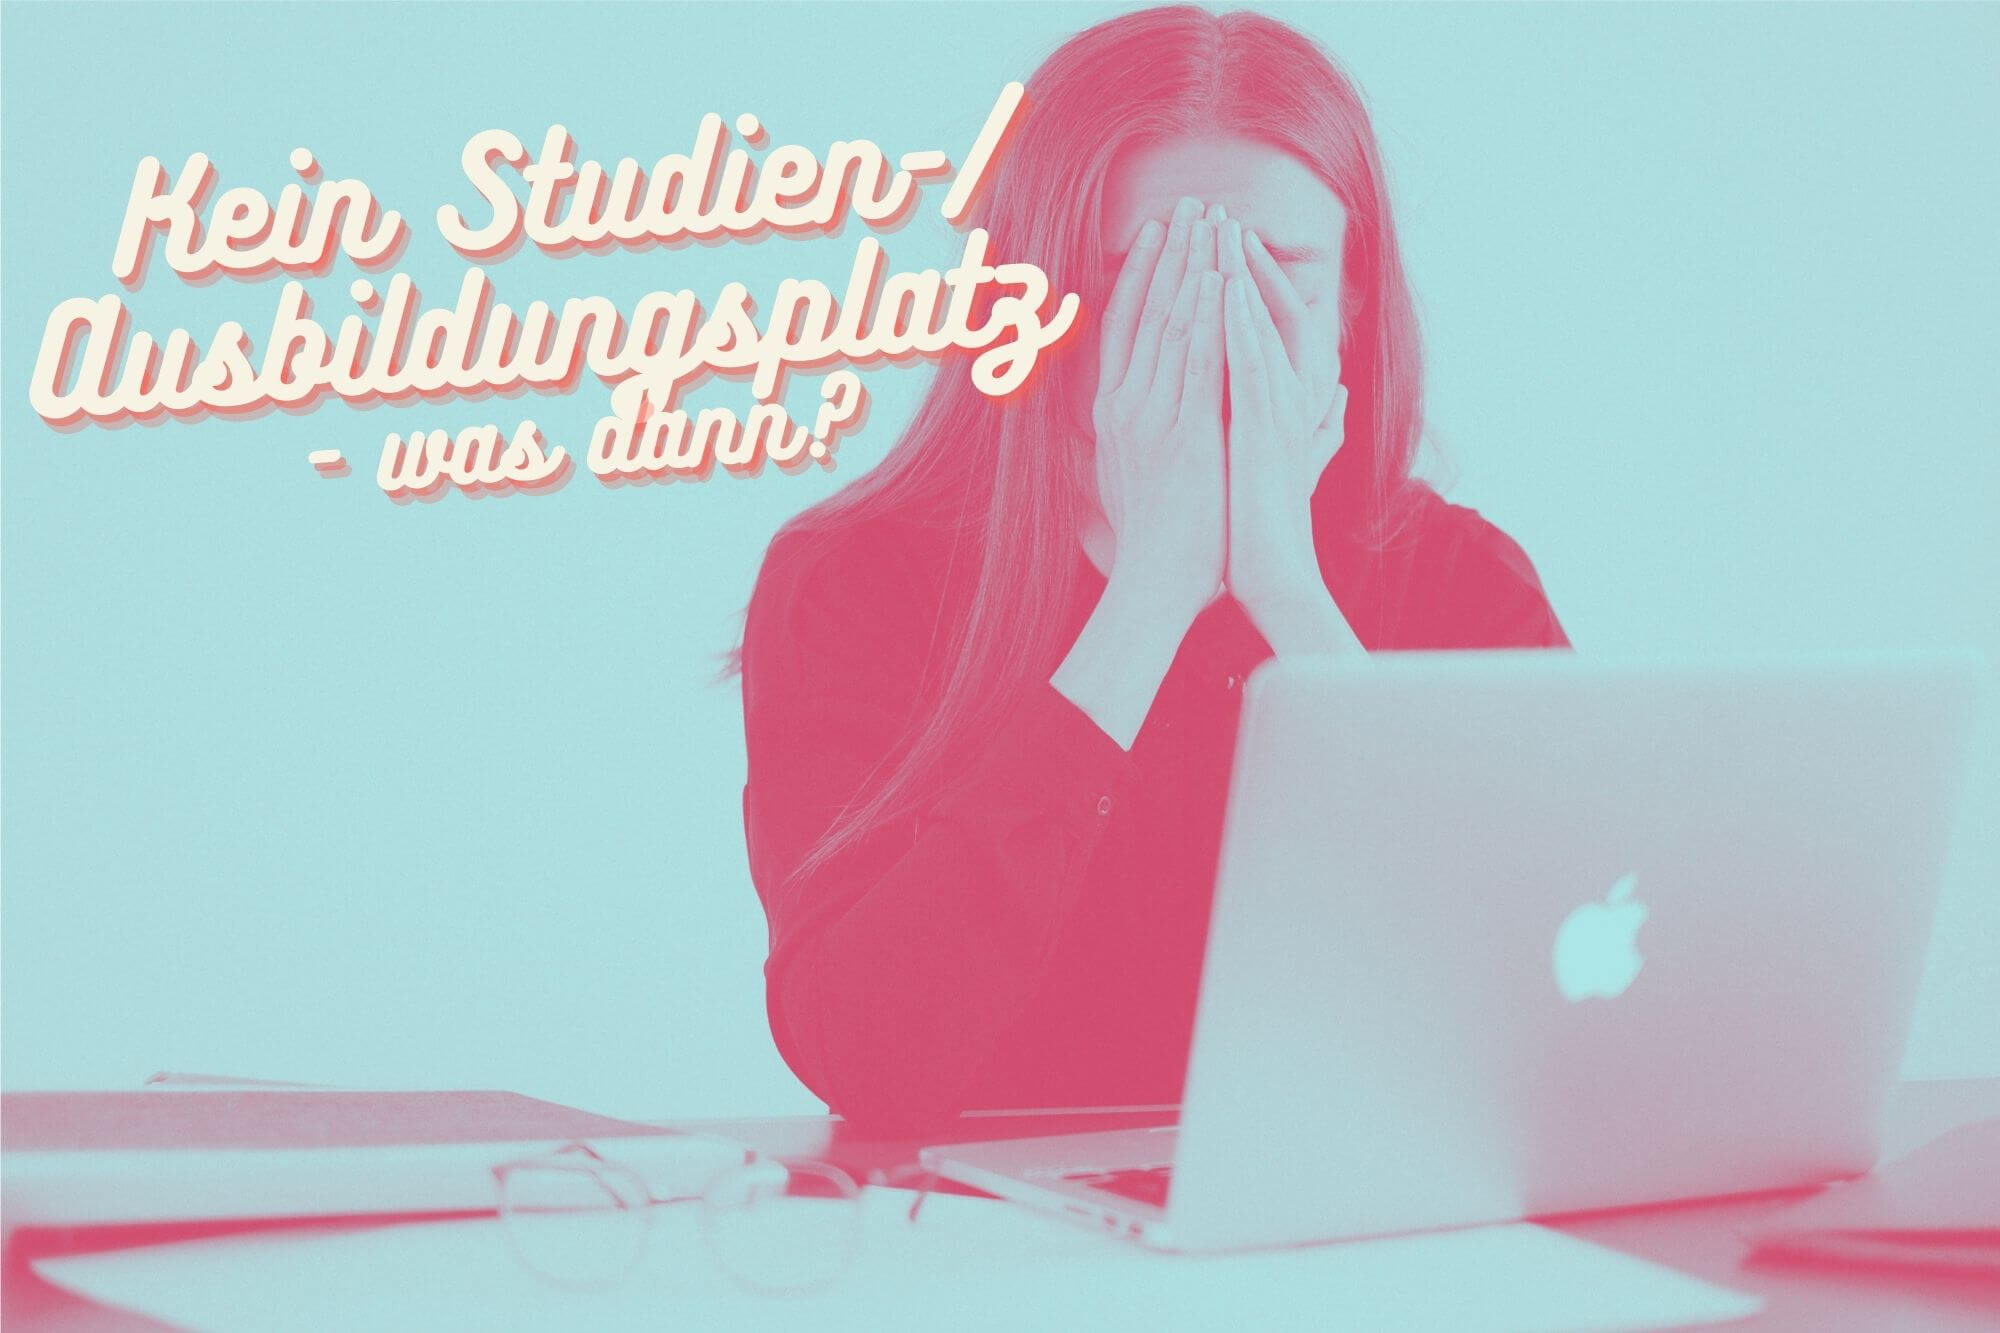 Eine Frau stützt sich ihr Gesicht in die Hände, während sie vor iihrem Laptop sitzt. Daneben der Titel "Kein Studien- / Ausbildungsplatz - was dann?"